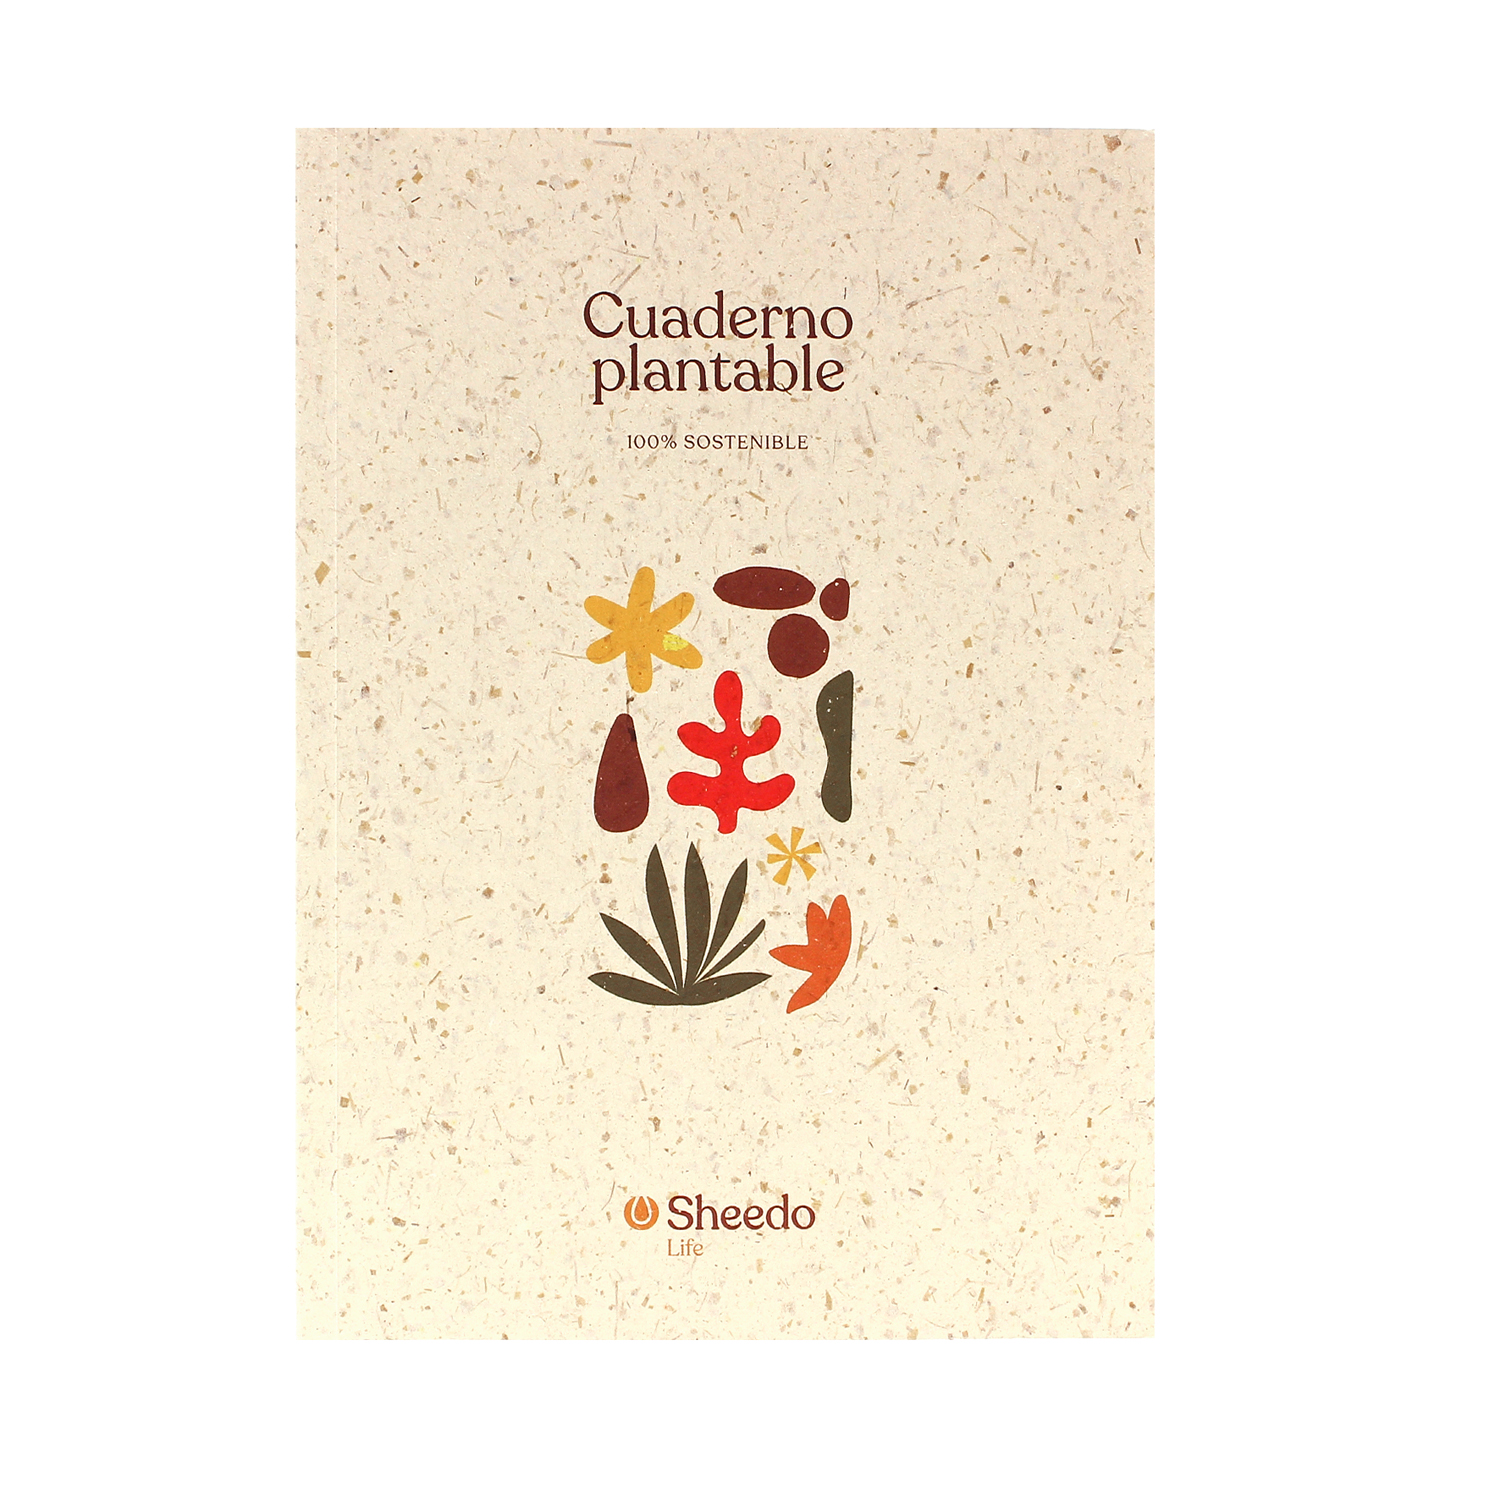 Cuaderno Eco-Friendly plantable - Sheedo